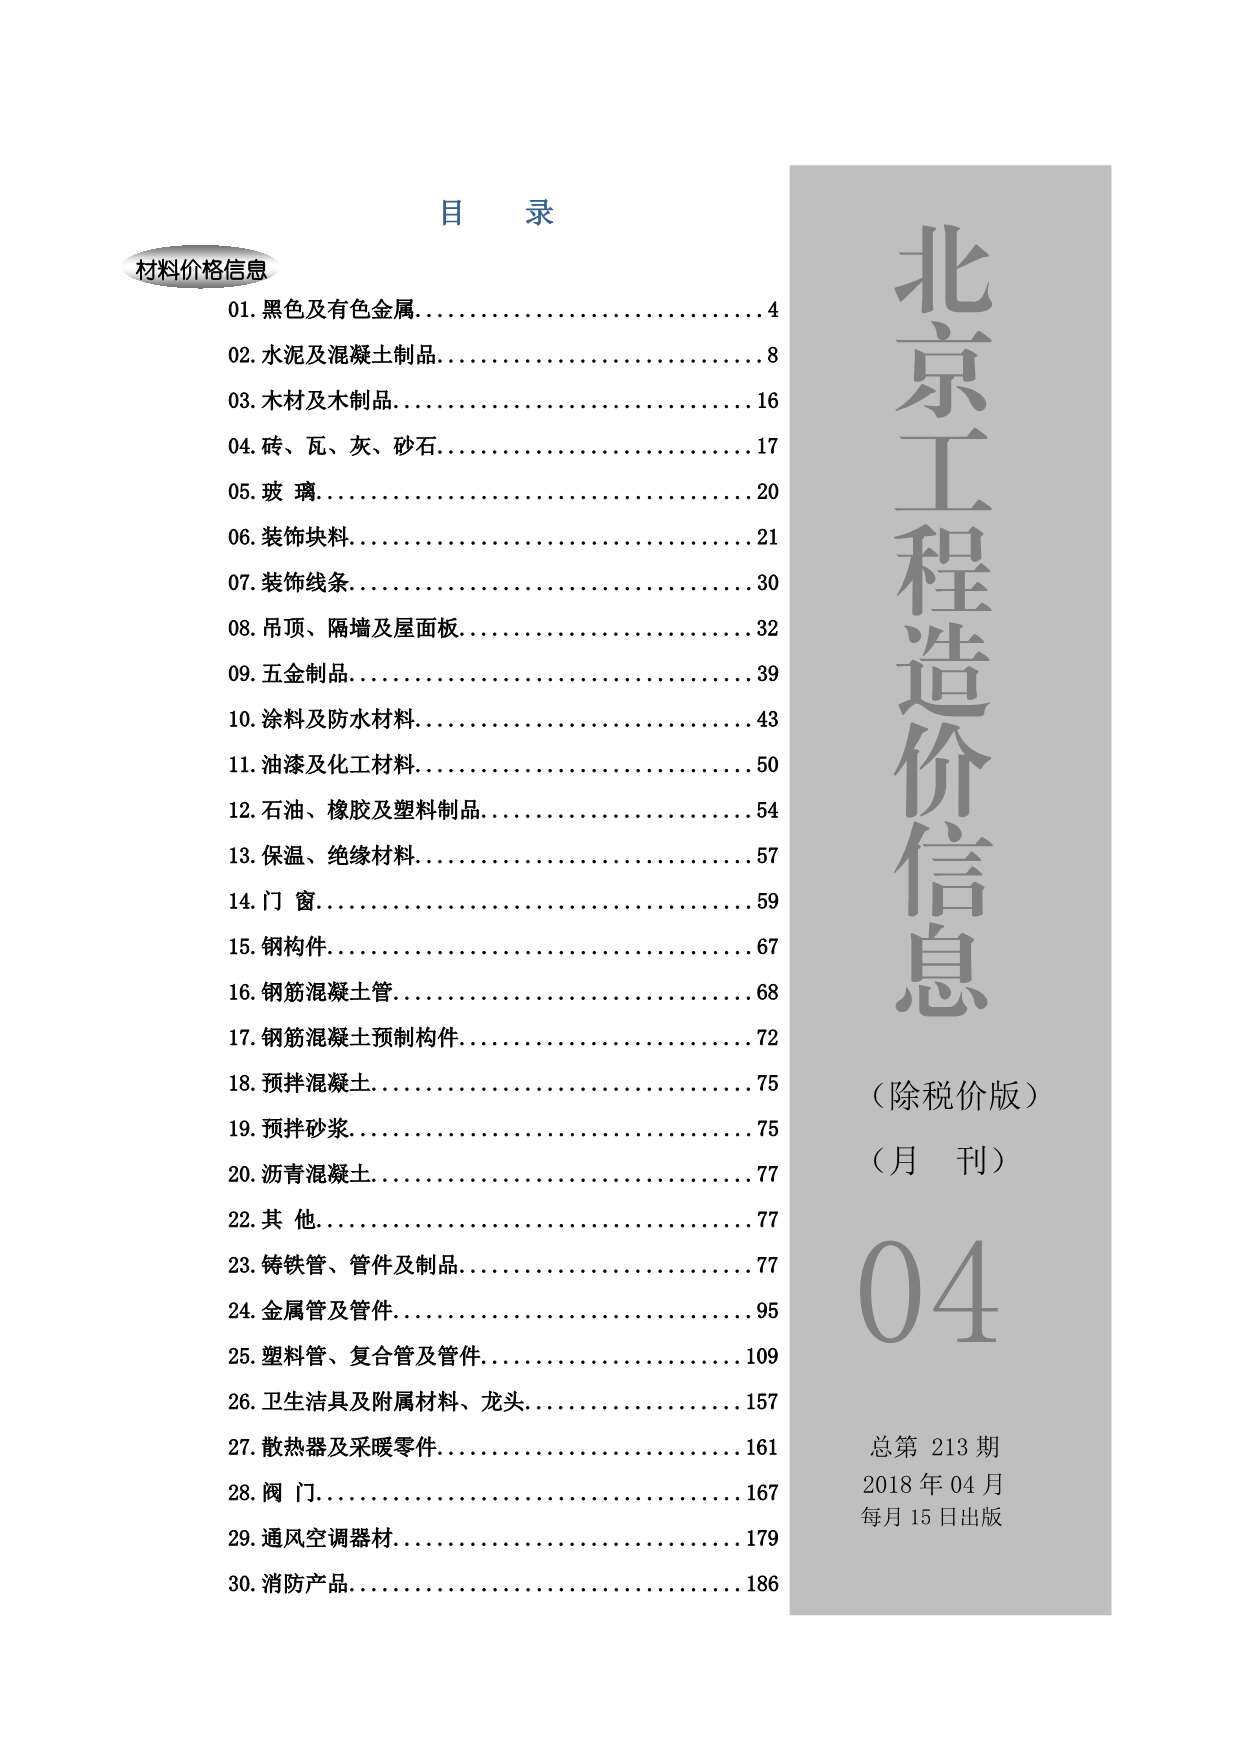 2018年4期北京除税价版造价信息期刊PDF扫描件